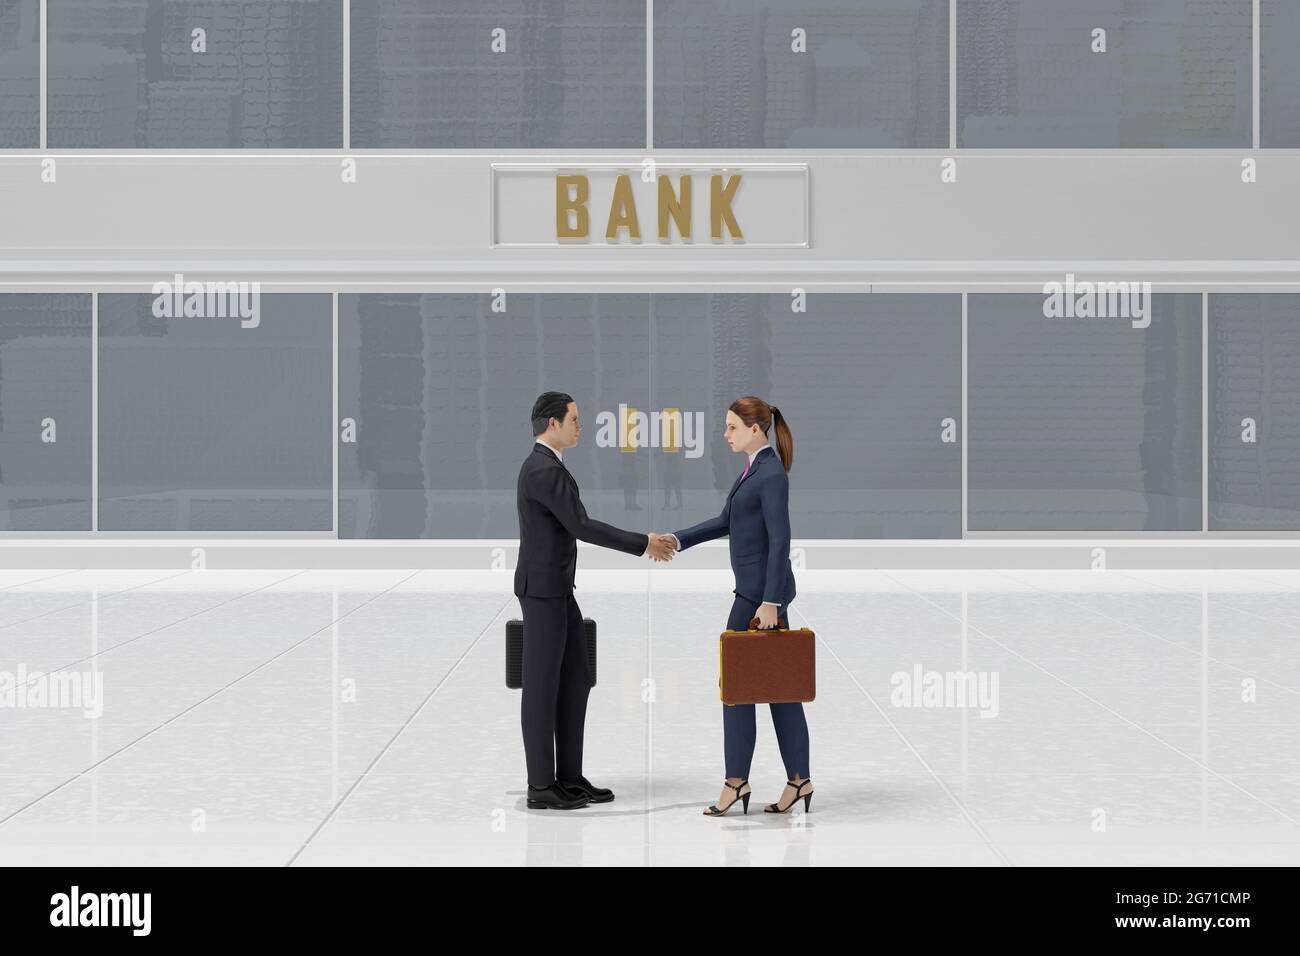 3D-Illustration. Geschäftsmann und Geschäftsfrau vor dem Bank- oder Finanzgebäude. Vertrag, Vereinbarung, Finanztransaktion. Stockfoto